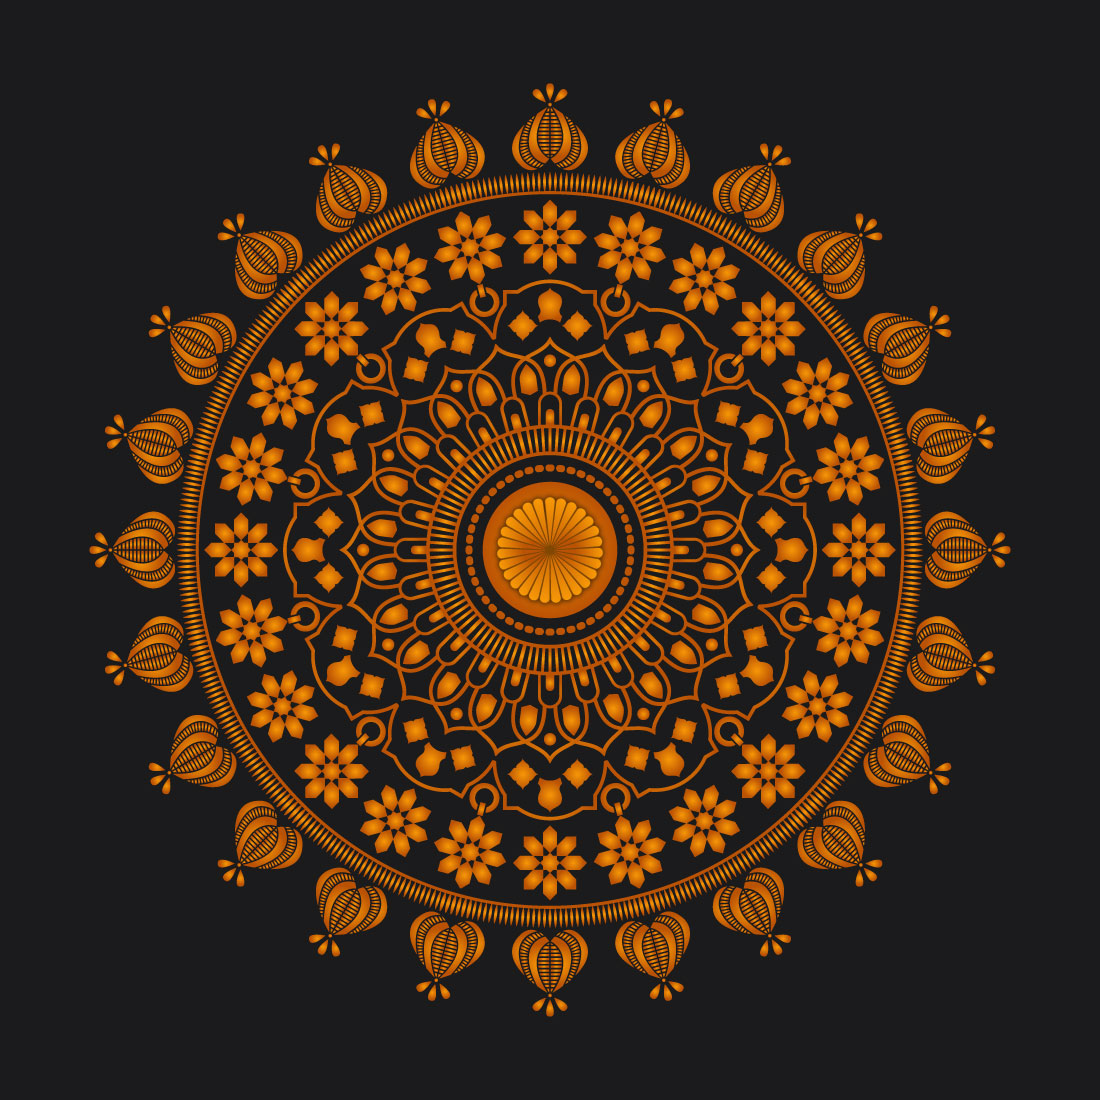 Royal Mandala Design Template preview image.